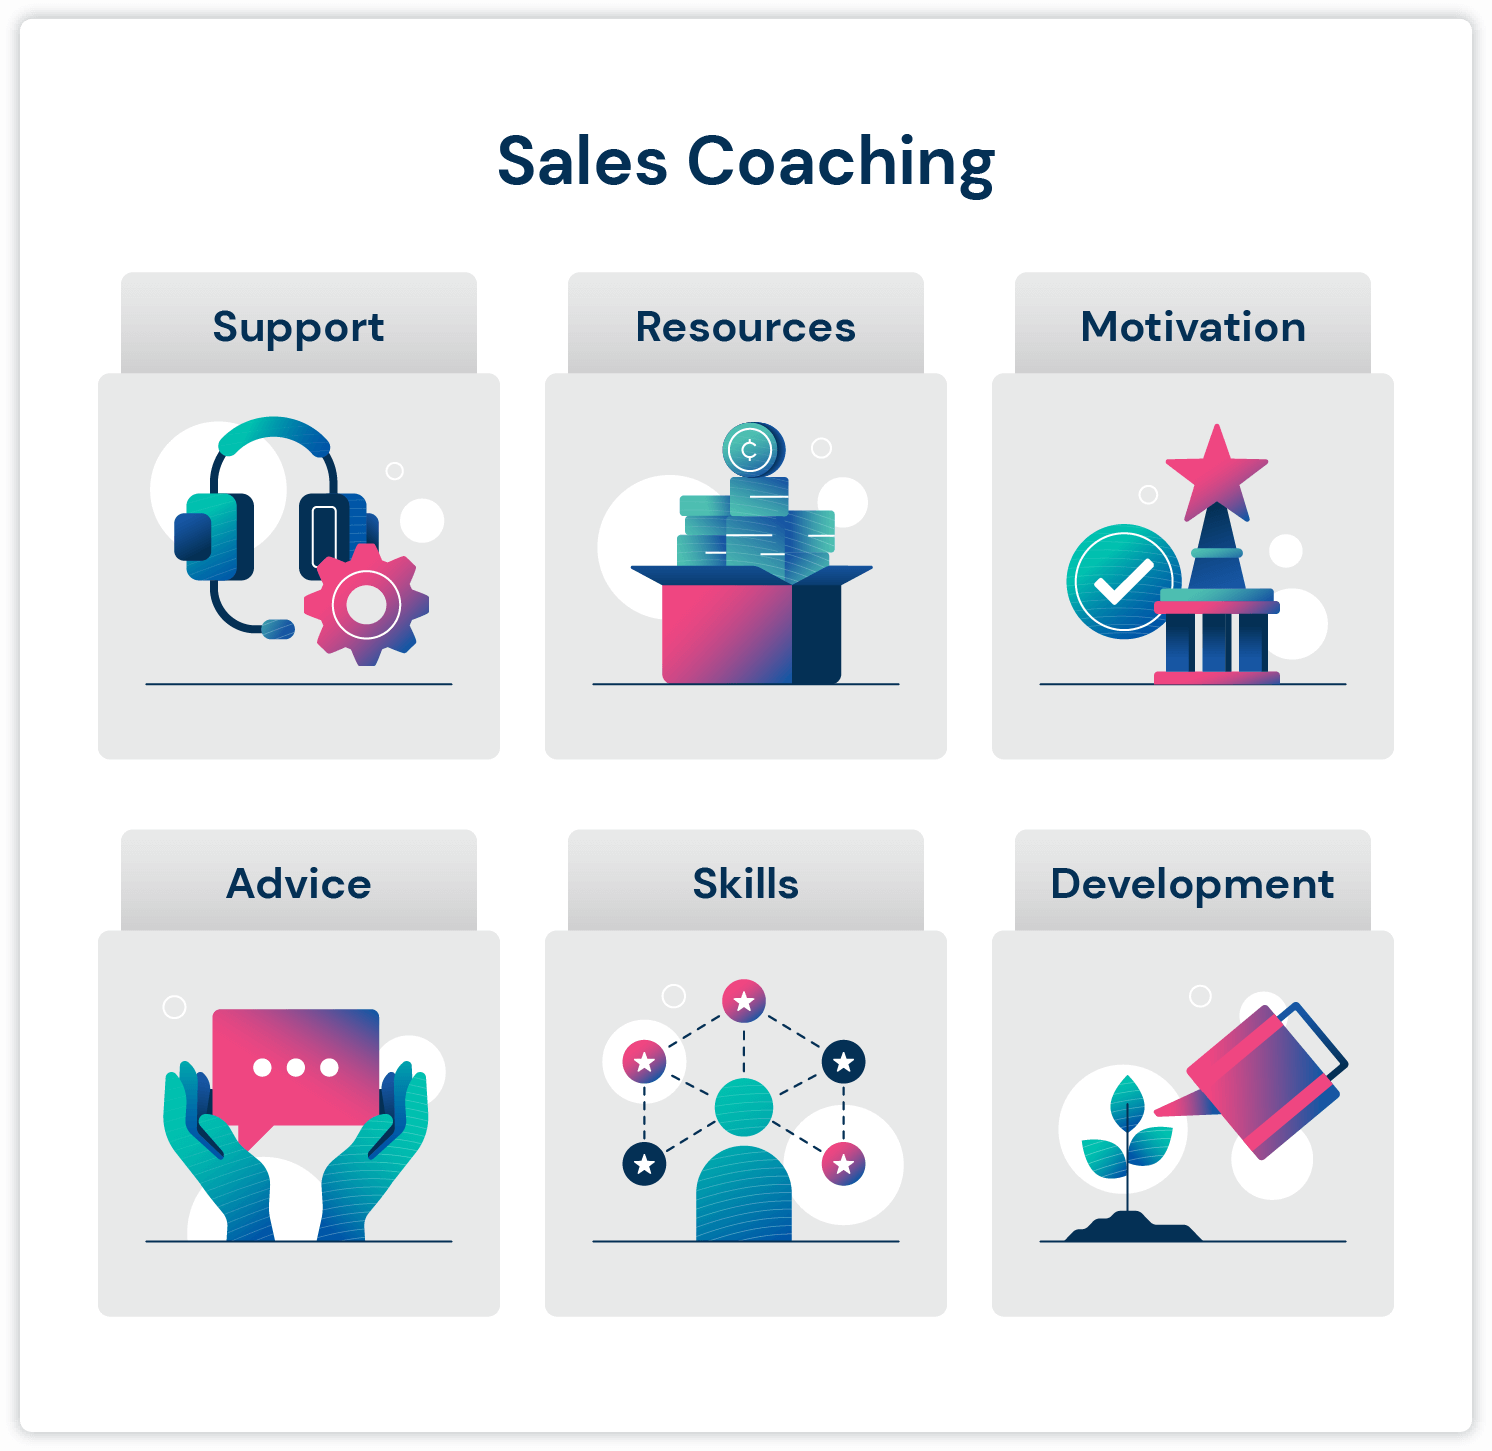 セールス コーチングが必要な理由を示すセールス コーチング インフォグラフィック: サポート、リソース、モチベーション、アドバイス、スキル、能力開発。